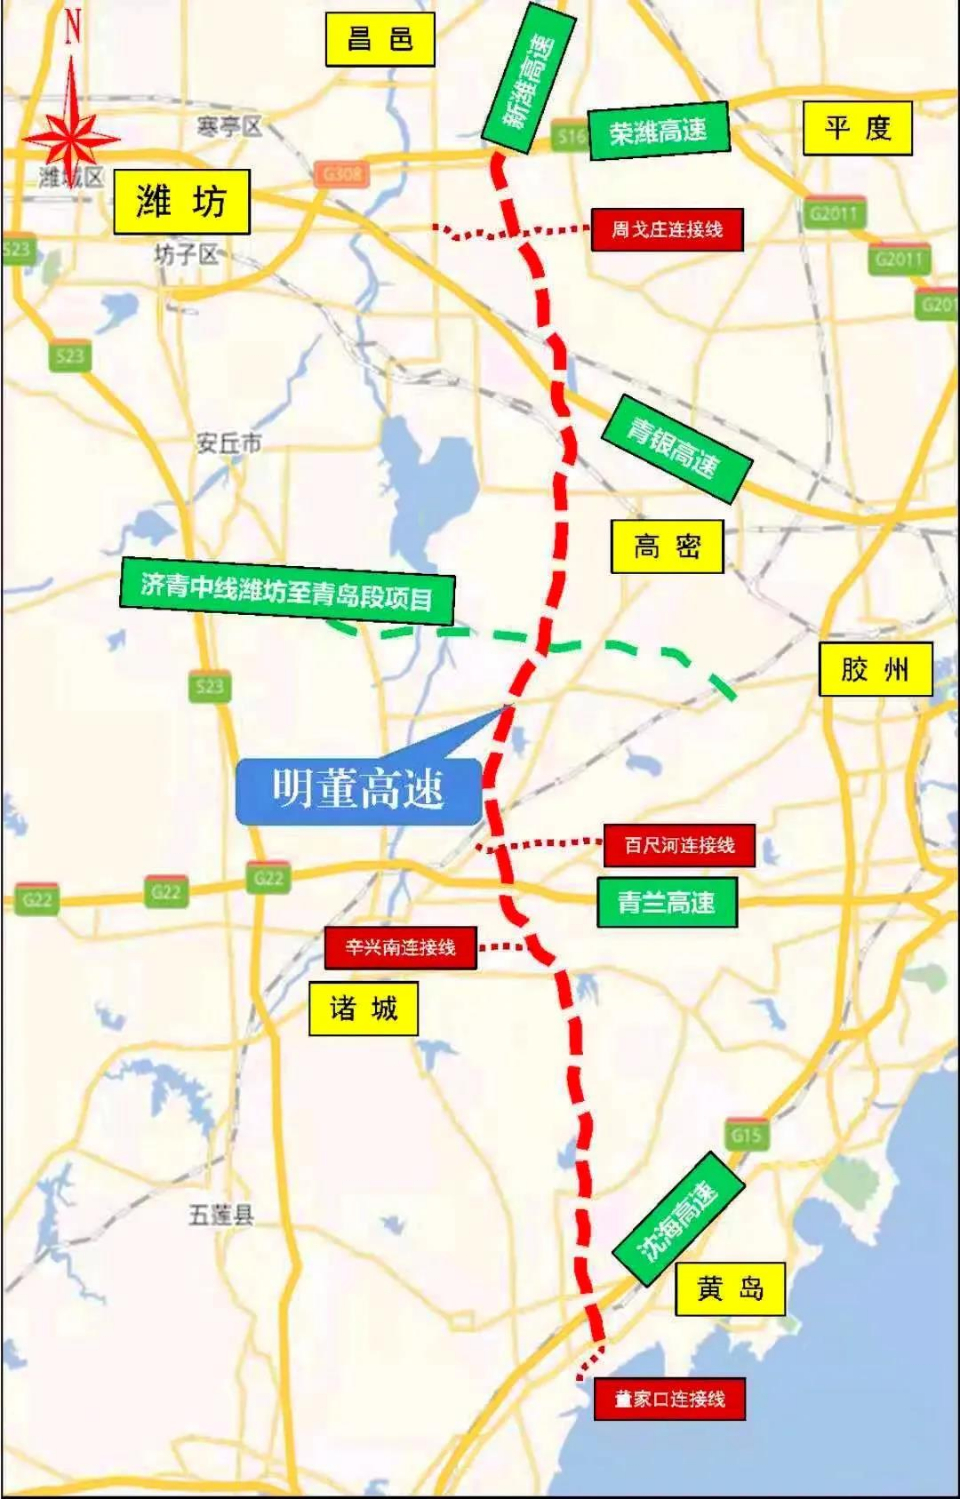 明董高速开建,潍坊新增一条南北交通大通道